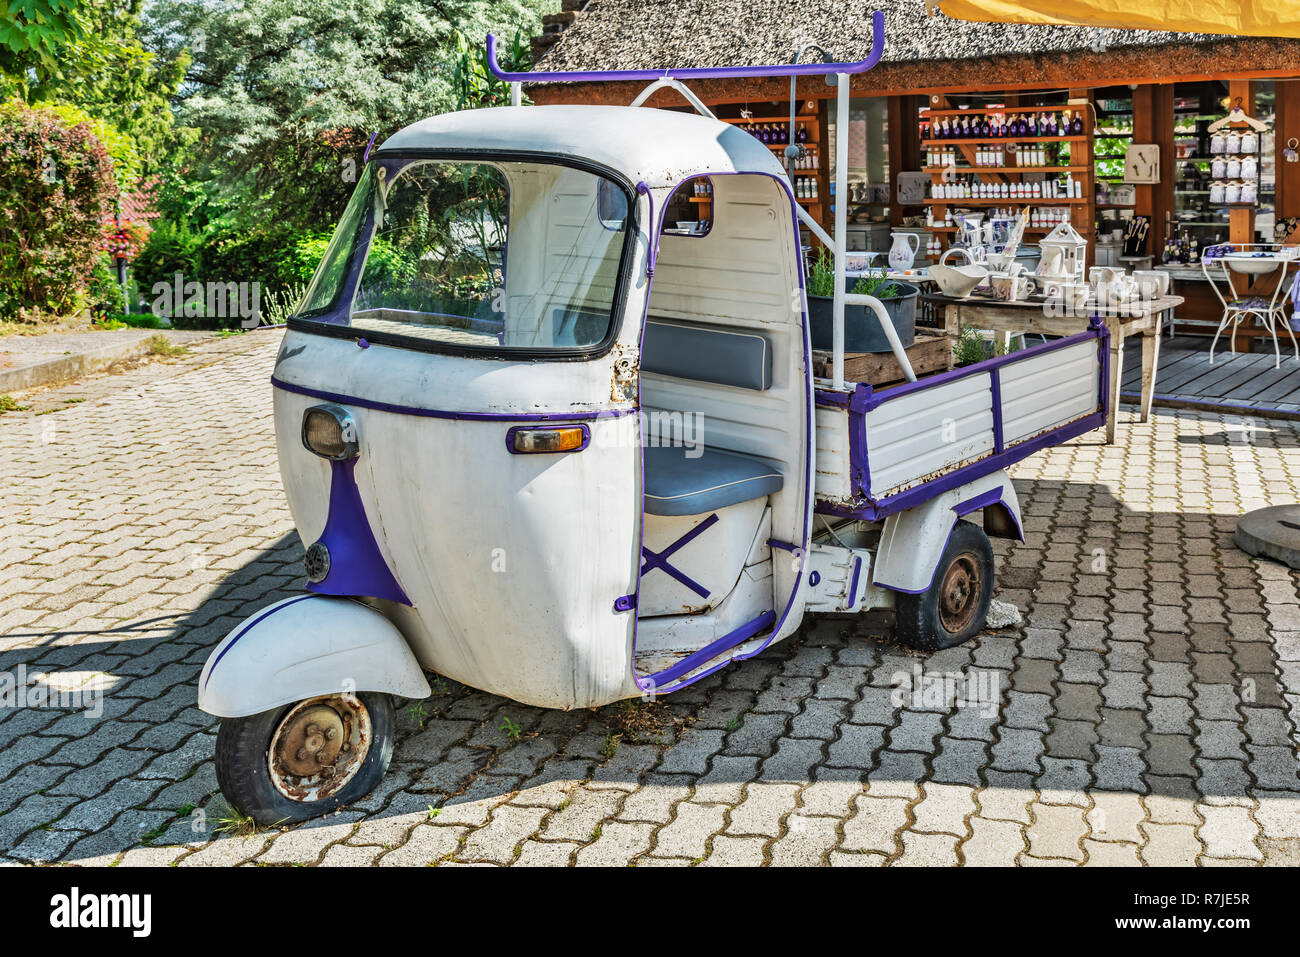 Il vecchio veicolo commerciale leggero Piaggio Ape è parte della decorazione di un negozio di vendita di prodotti alla lavanda, Tihany, Veszprem, oltre Danubio centrale, H Foto Stock